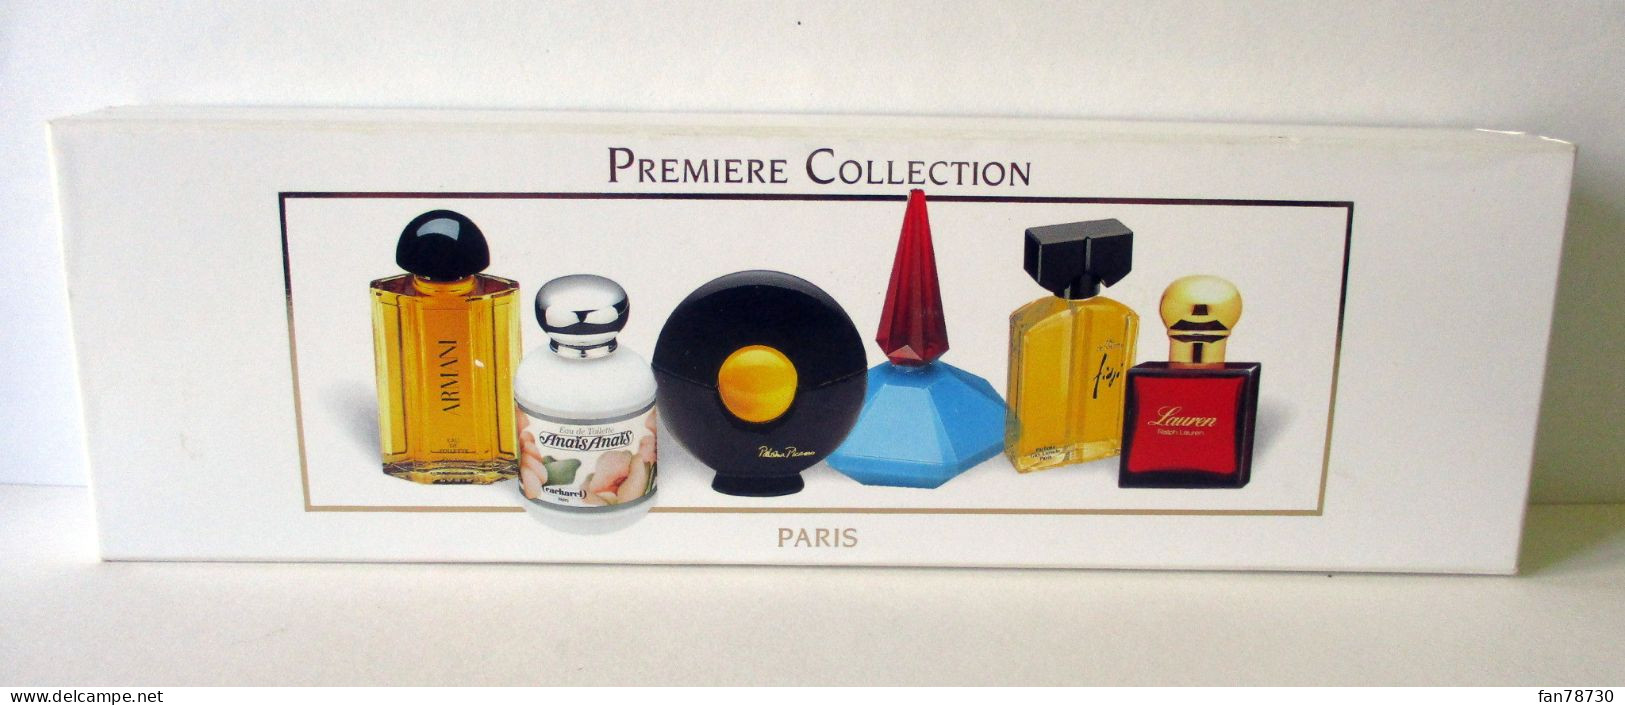 Miniatures X 6 "Première Collection" Paris - Prestige Et Collections - FRAIS DU SITE DEDUITS - Miniaturen Damendüfte (mit Verpackung)